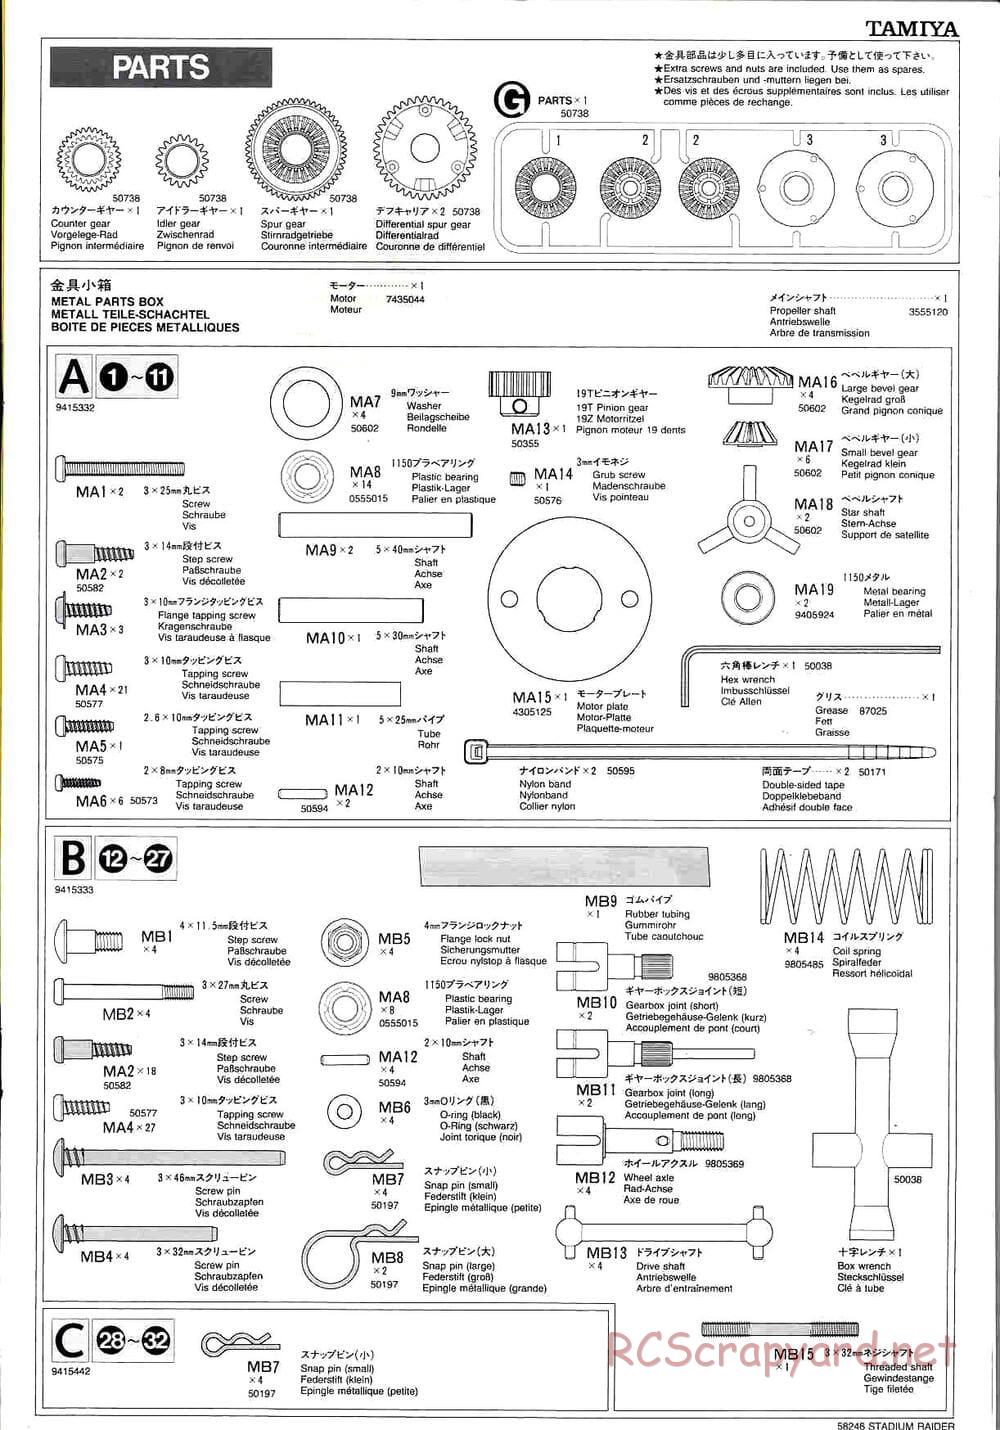 Tamiya - Stadium Raider - TL-01 Chassis - Manual - Page 23